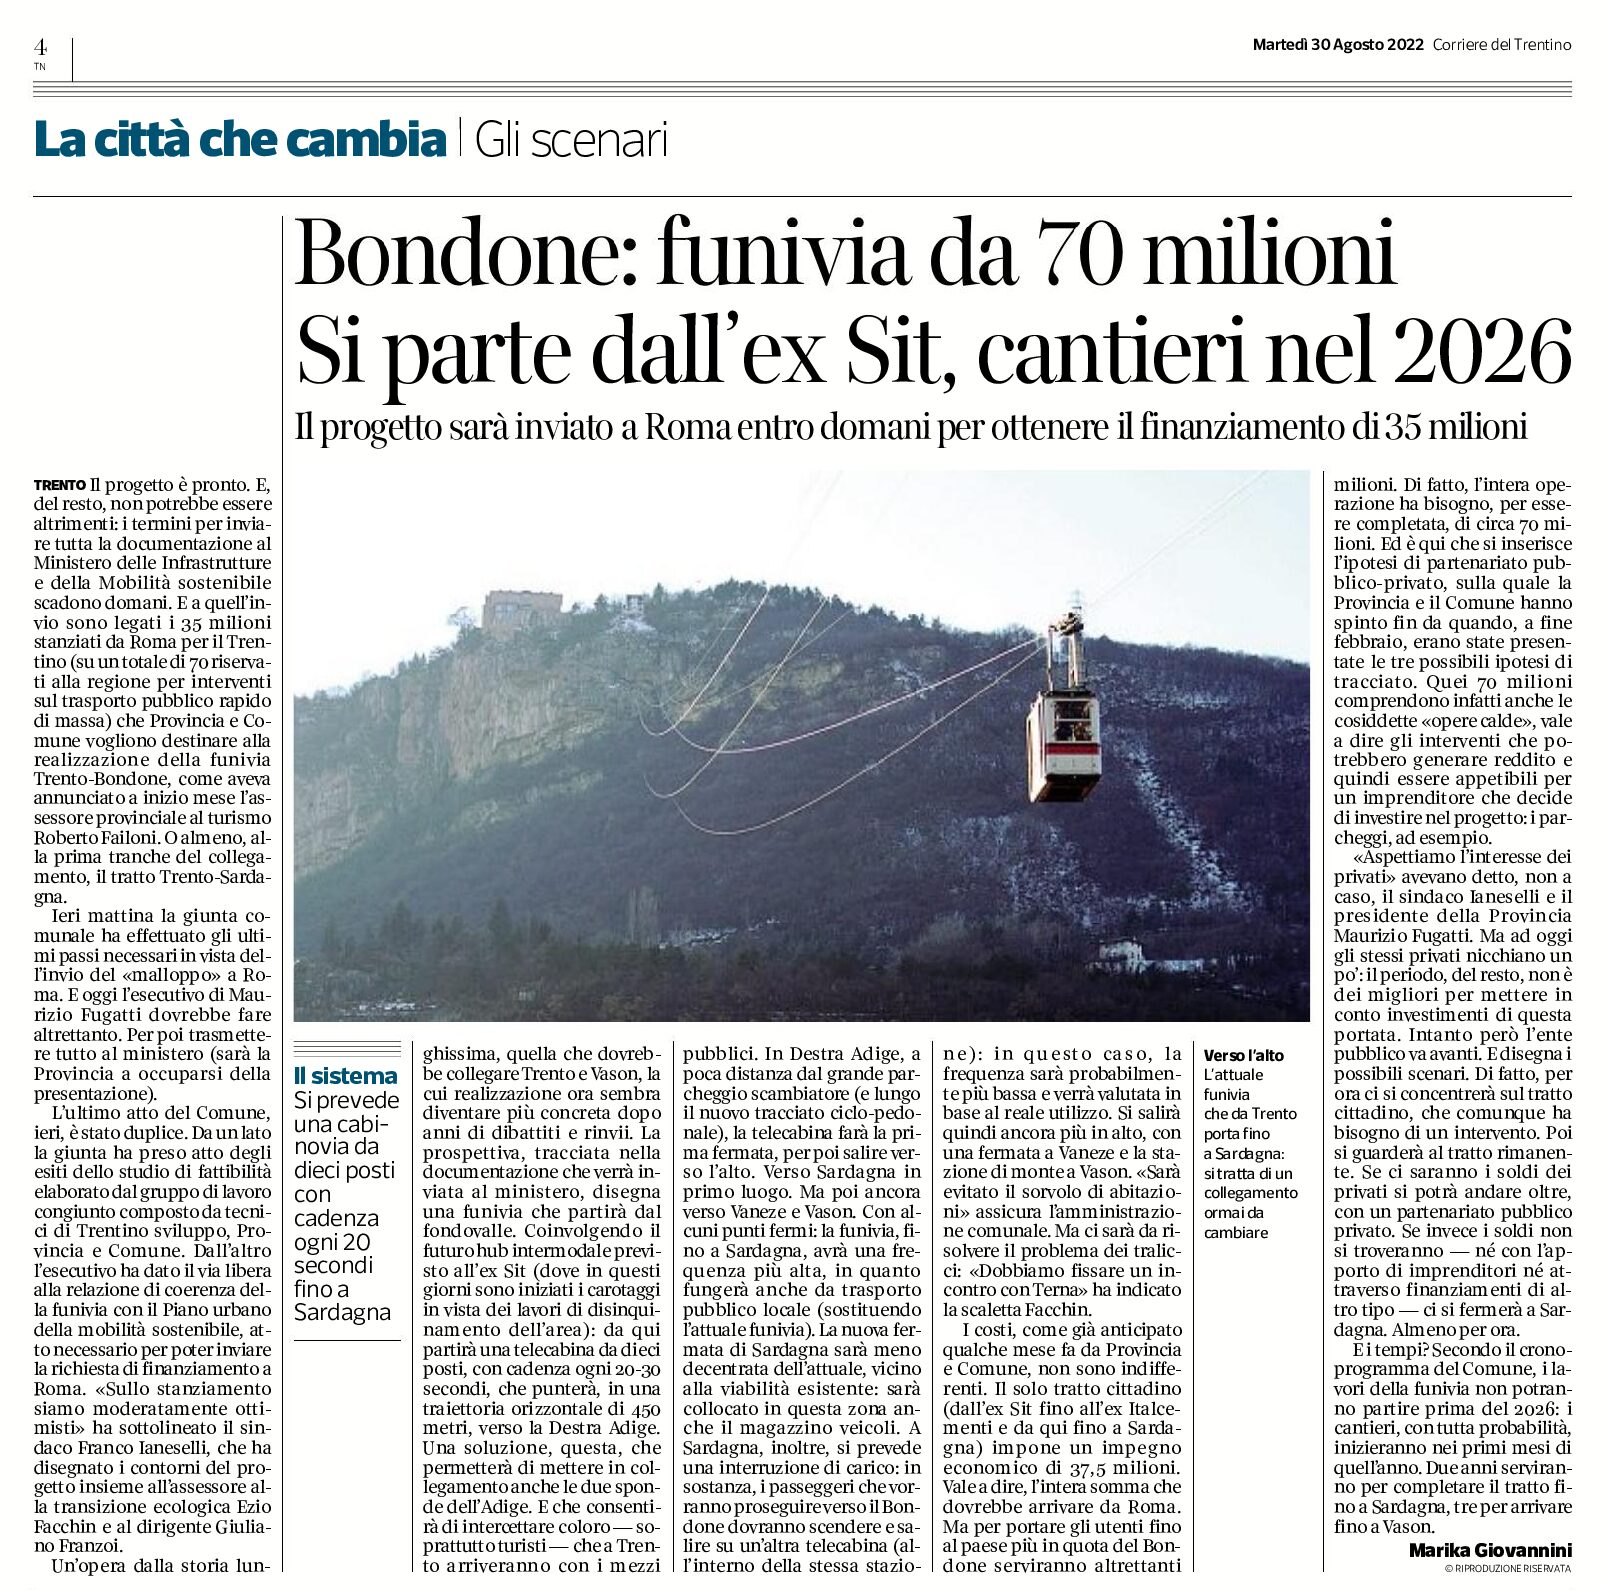 Funivia Trento-Bondone: partenza dall’ex Sit, cantieri nel 2026, costo 70 milioni